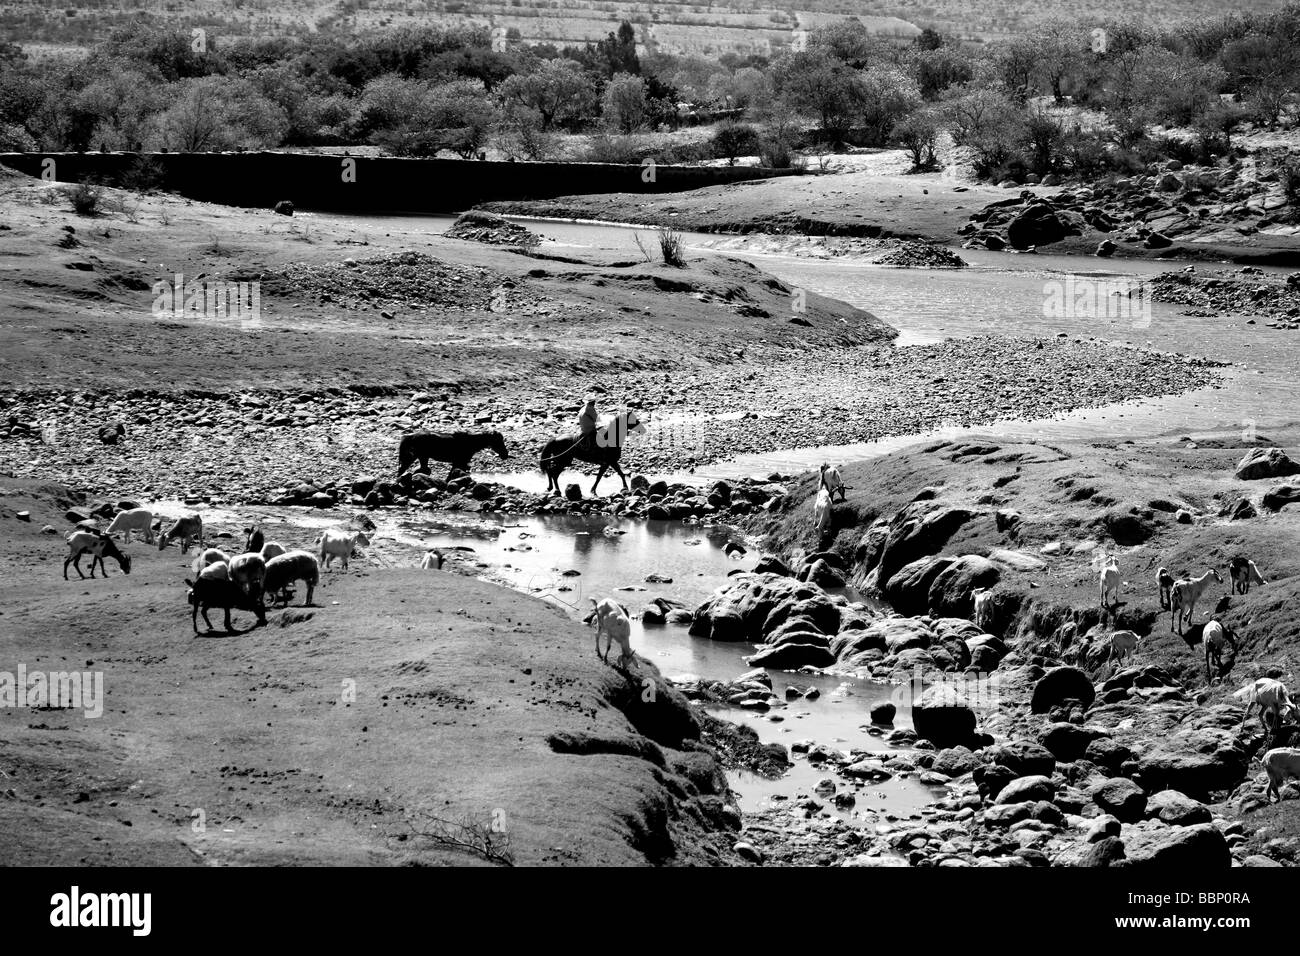 Paysage en noir et blanc et des chevaux le traversant dans une image nostalgique désert inspire la paix dans horizons beautyful Banque D'Images